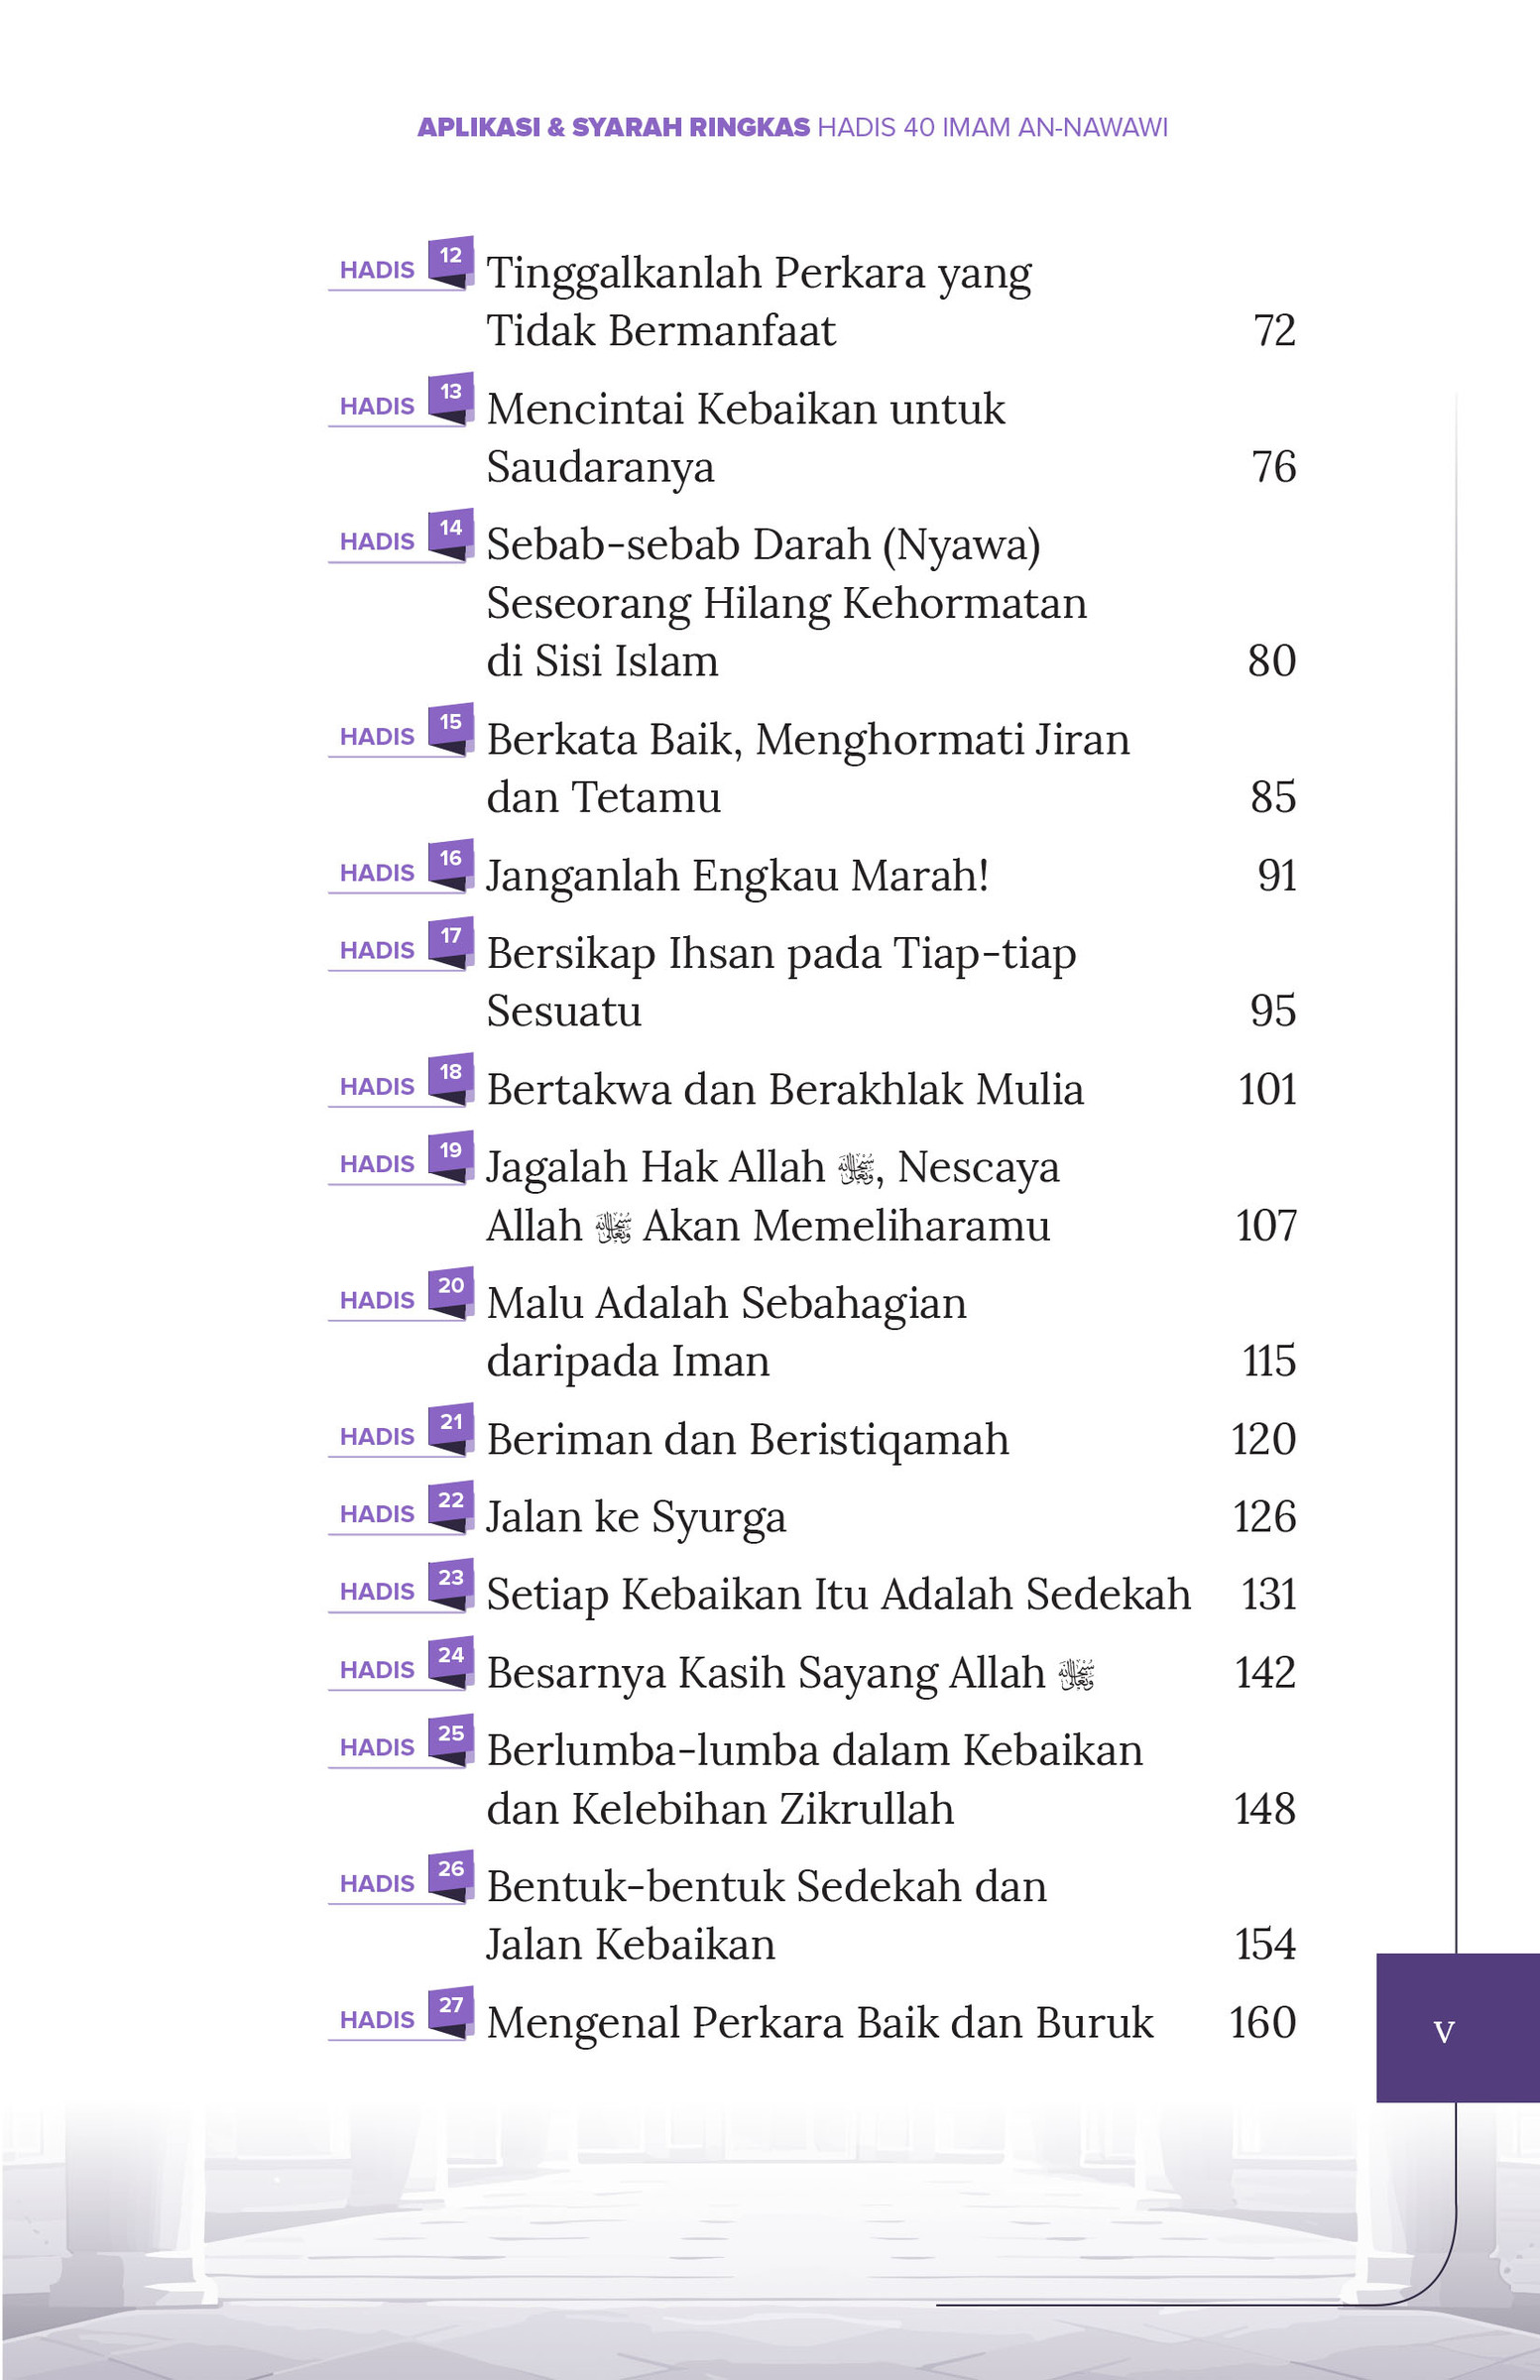 FA_Aplikasi dan Syarah 40 Hadis Imam Nawawi-5